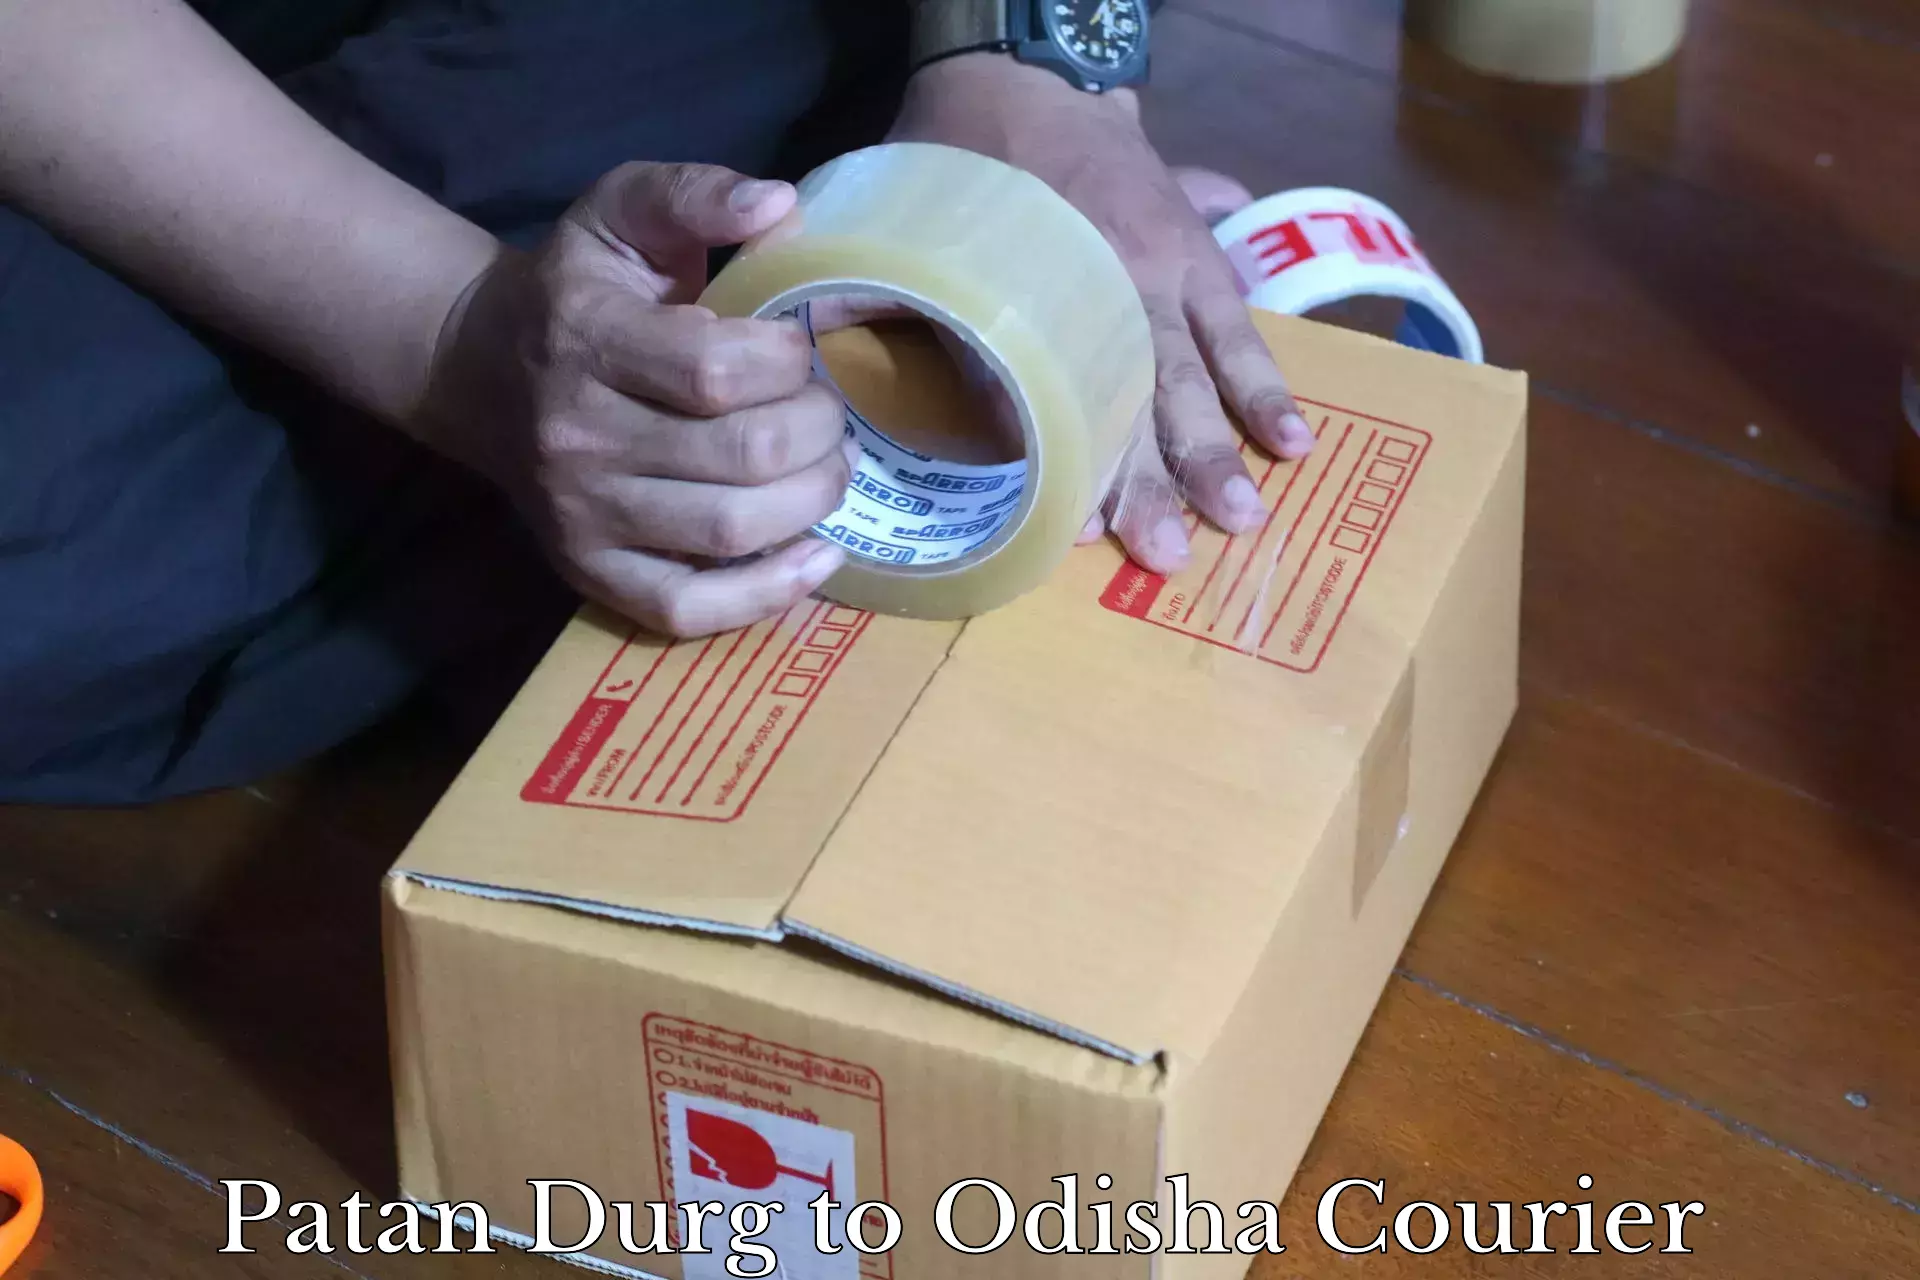 Cargo delivery service Patan Durg to Muniguda